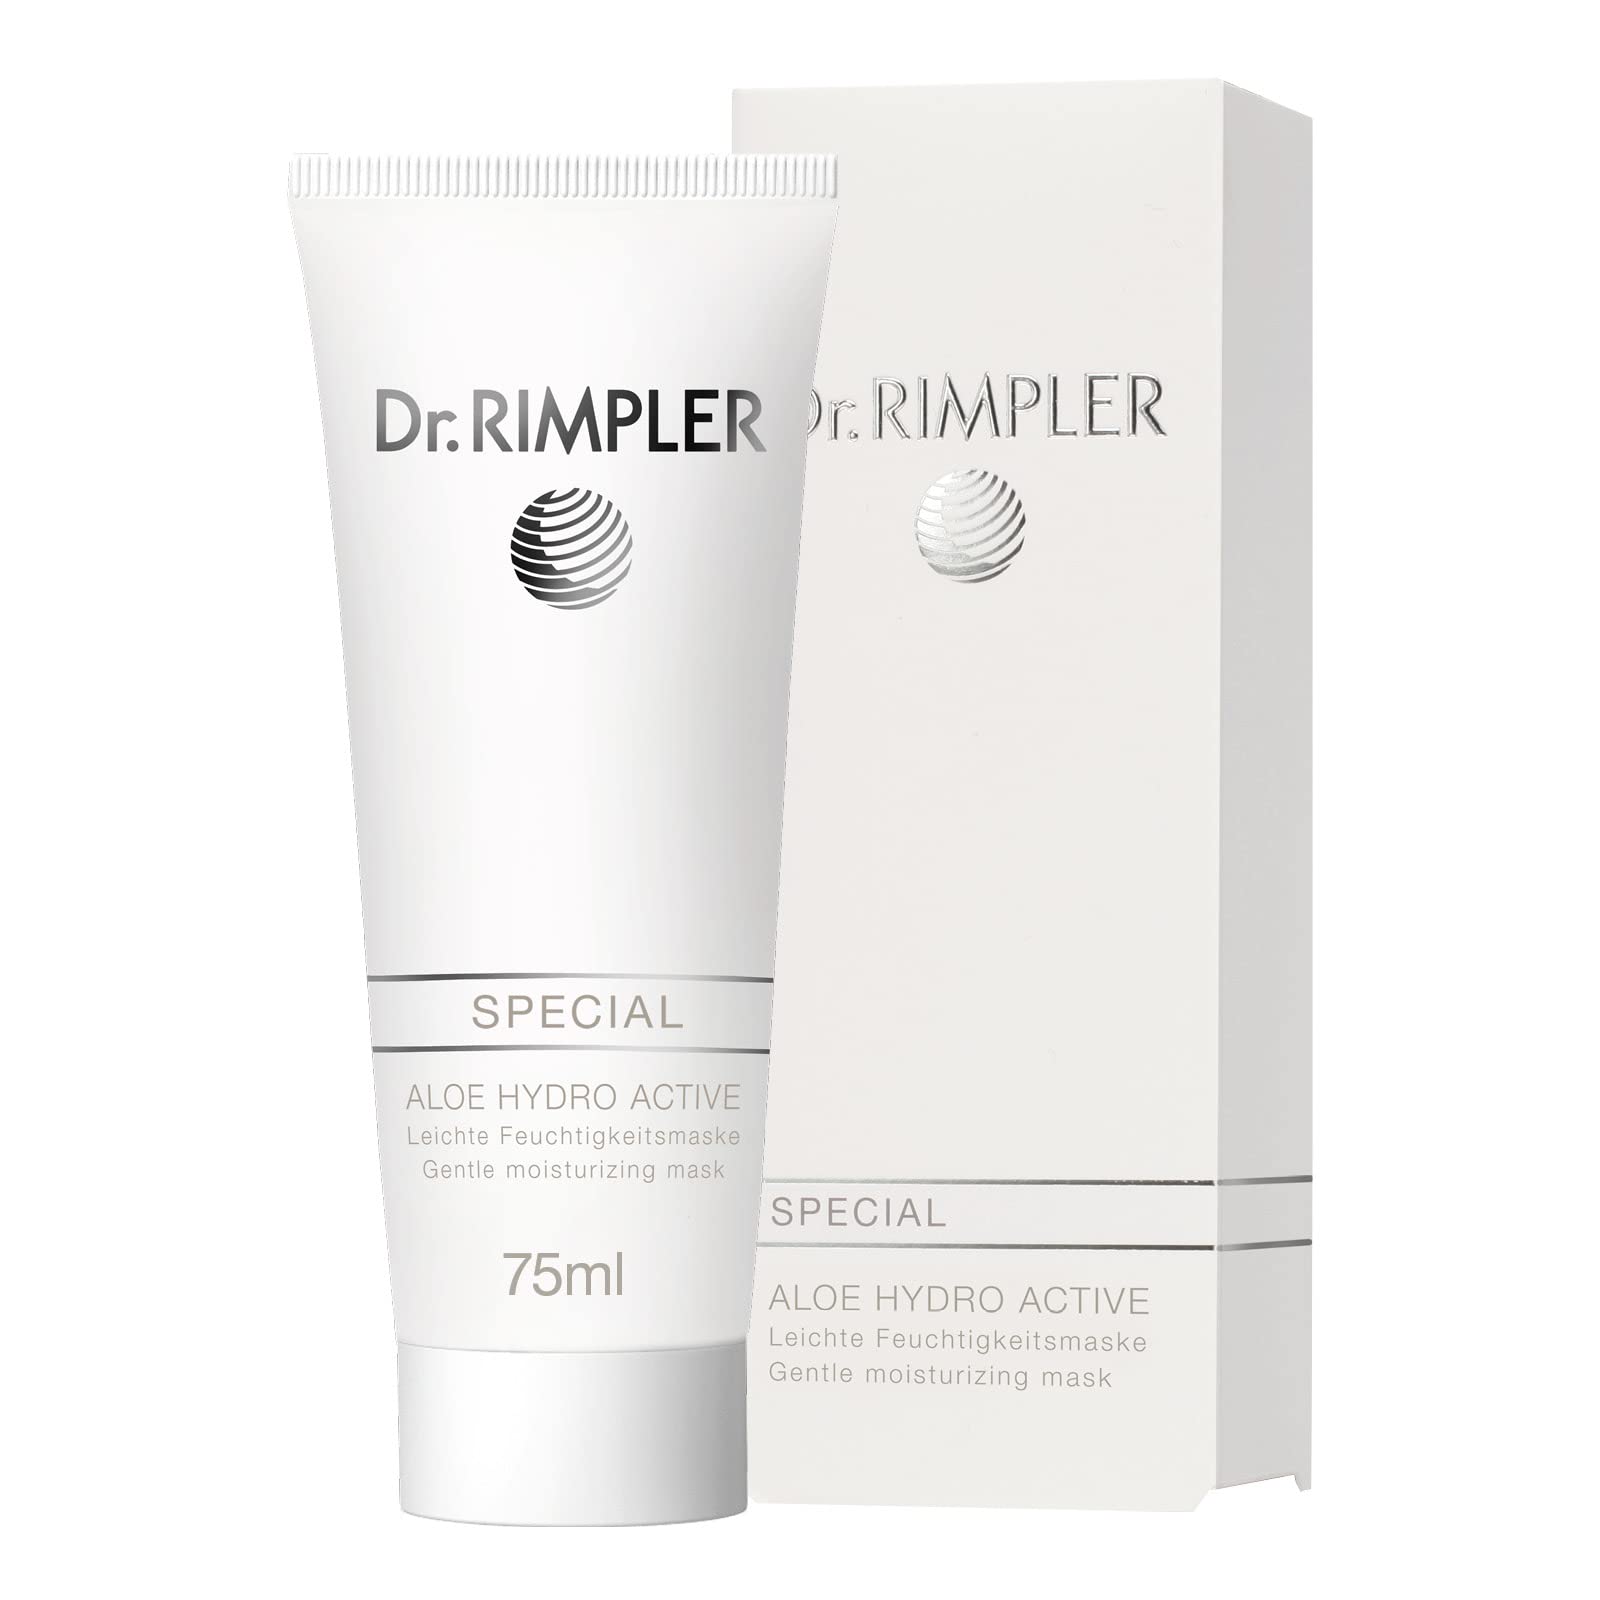 Dr. Rimpler Gesichtsmaske extra feuchtigkeitsspendend "Hydro Activ" I Pflege-Maske für den trockenen Hauttyp I Aloe Vera Crememaske, 75ml